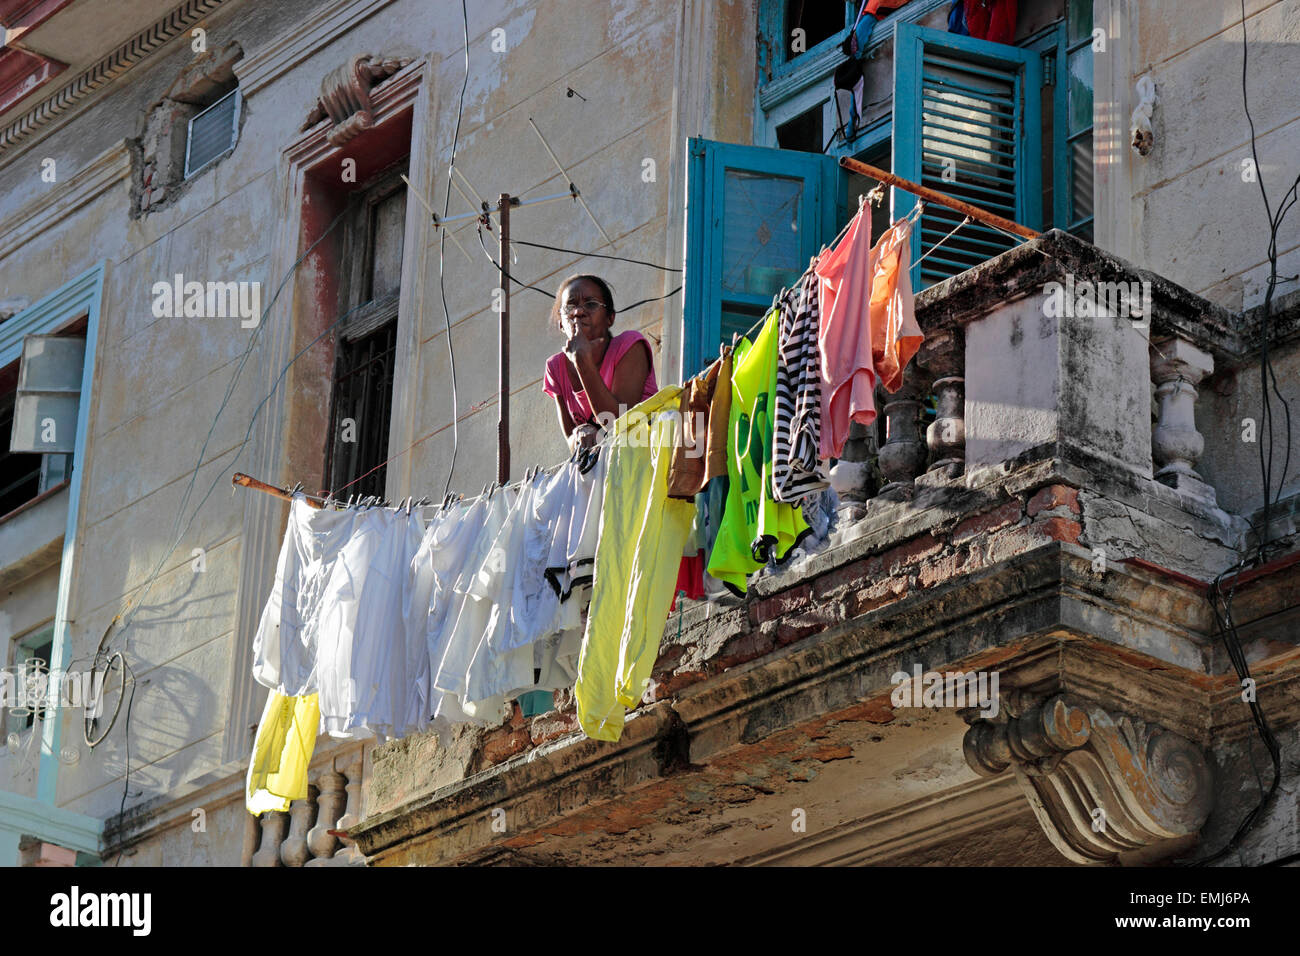 Frau auf Balkon Wohnhaus Fassaden Altstadt Habana Vieja Havanna Kuba Stockfoto